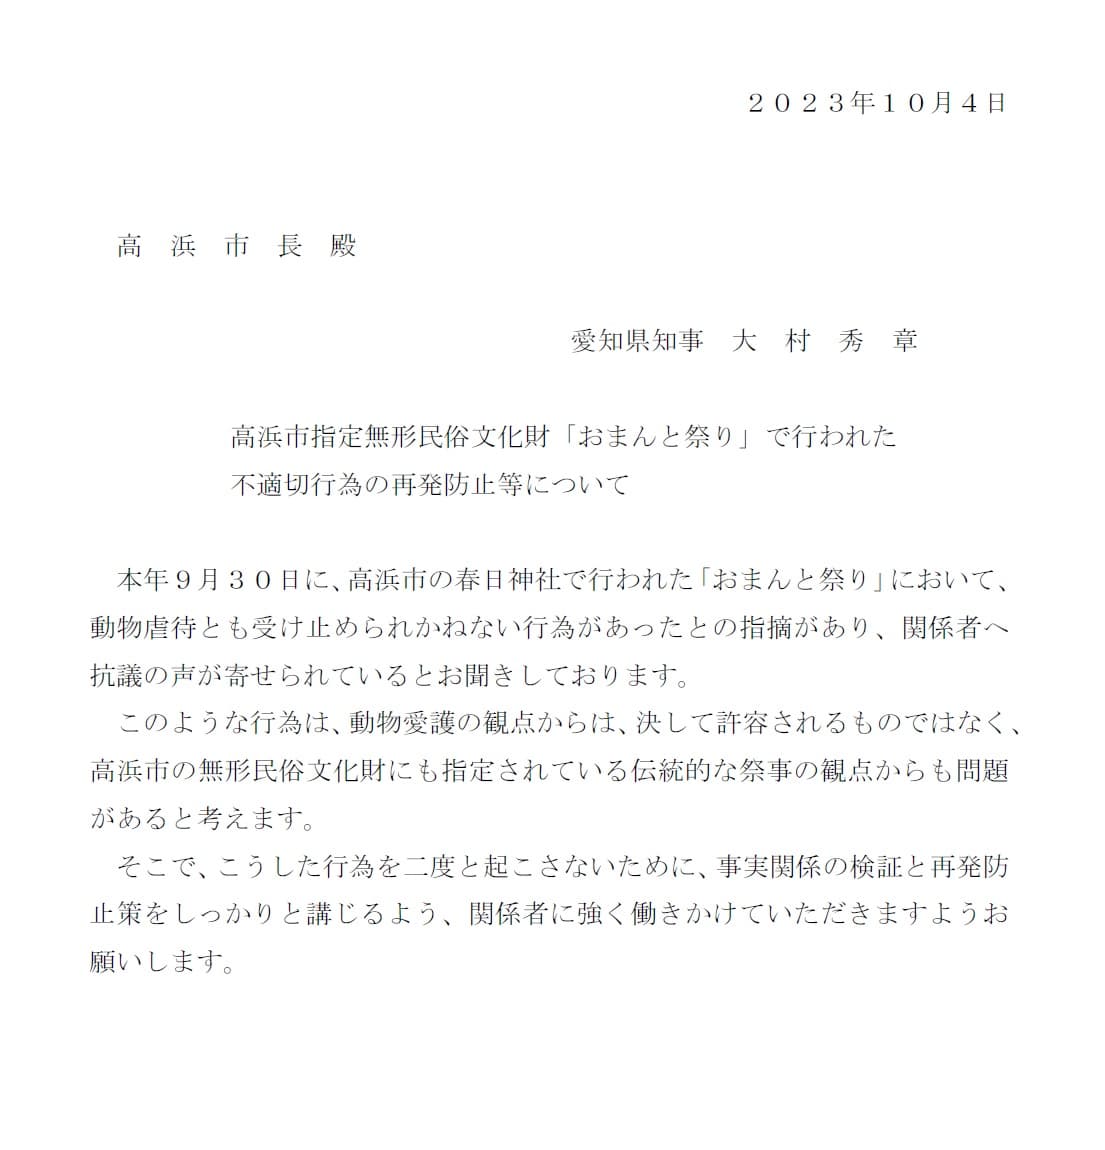 大村秀章愛知県知事から、「高浜おまんと祭り」関係者や高浜市長に対して注意喚起